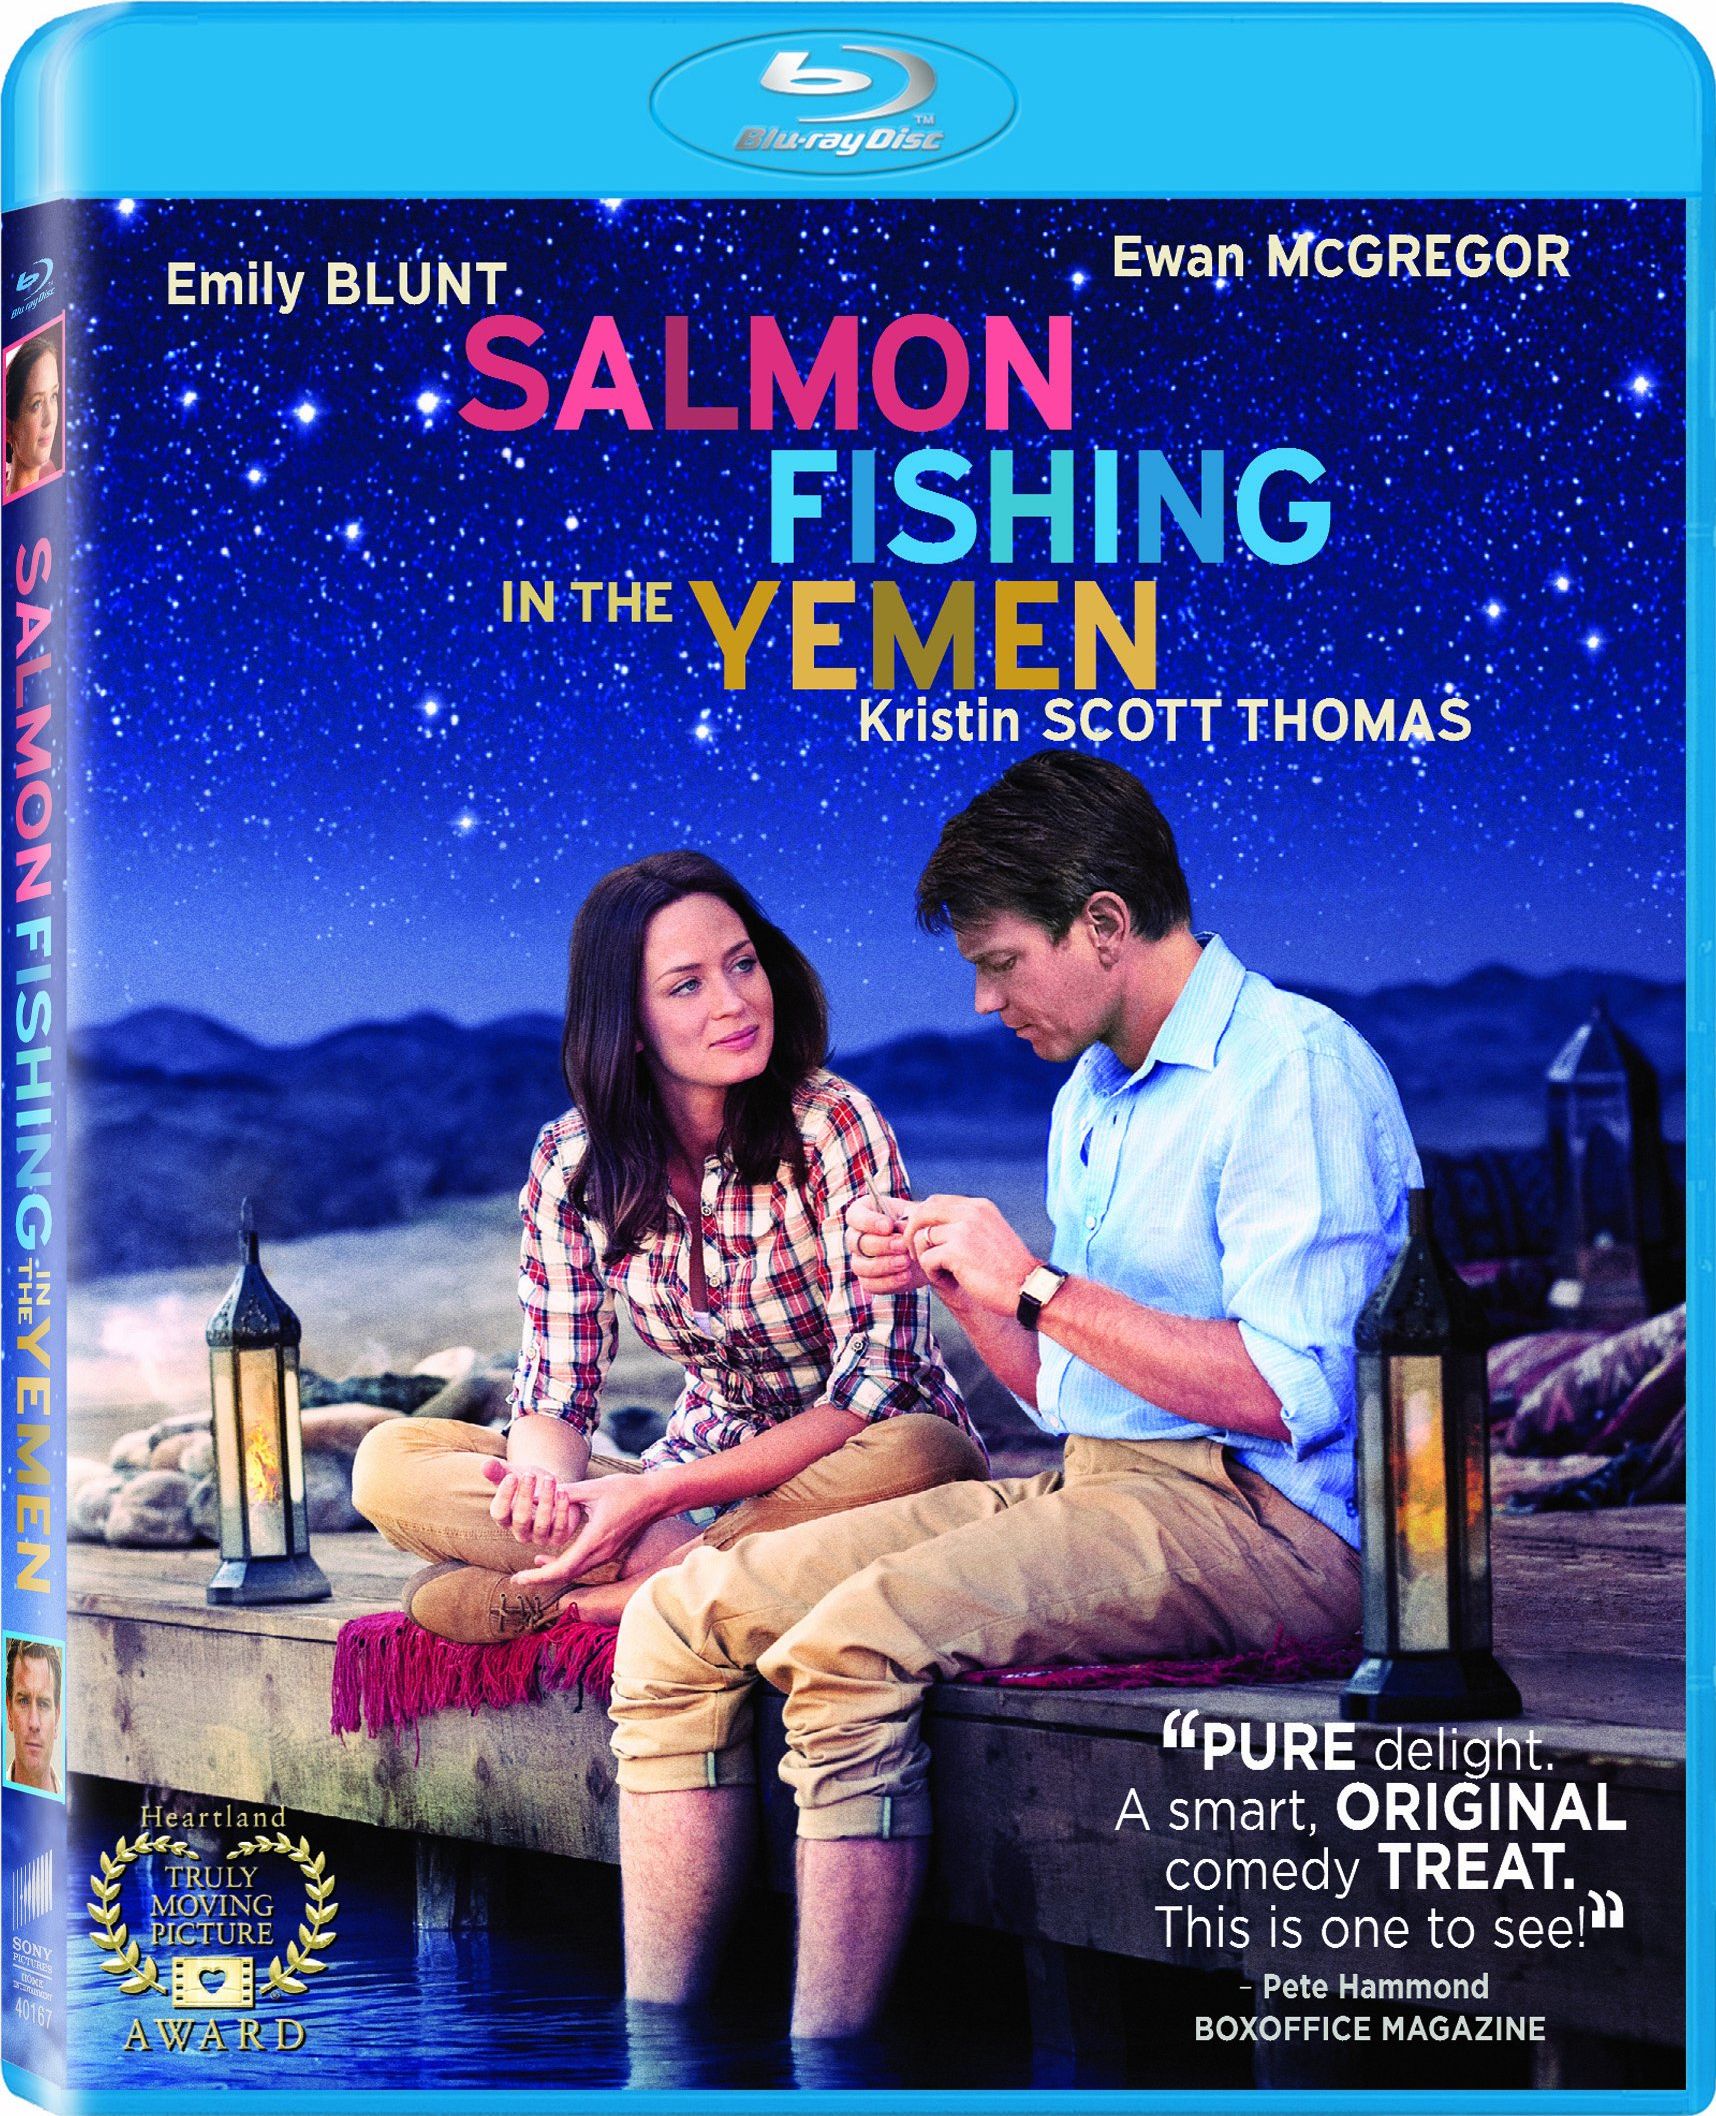 Salmon Fishing in the Yemen DVD Release Date July 17, 2012